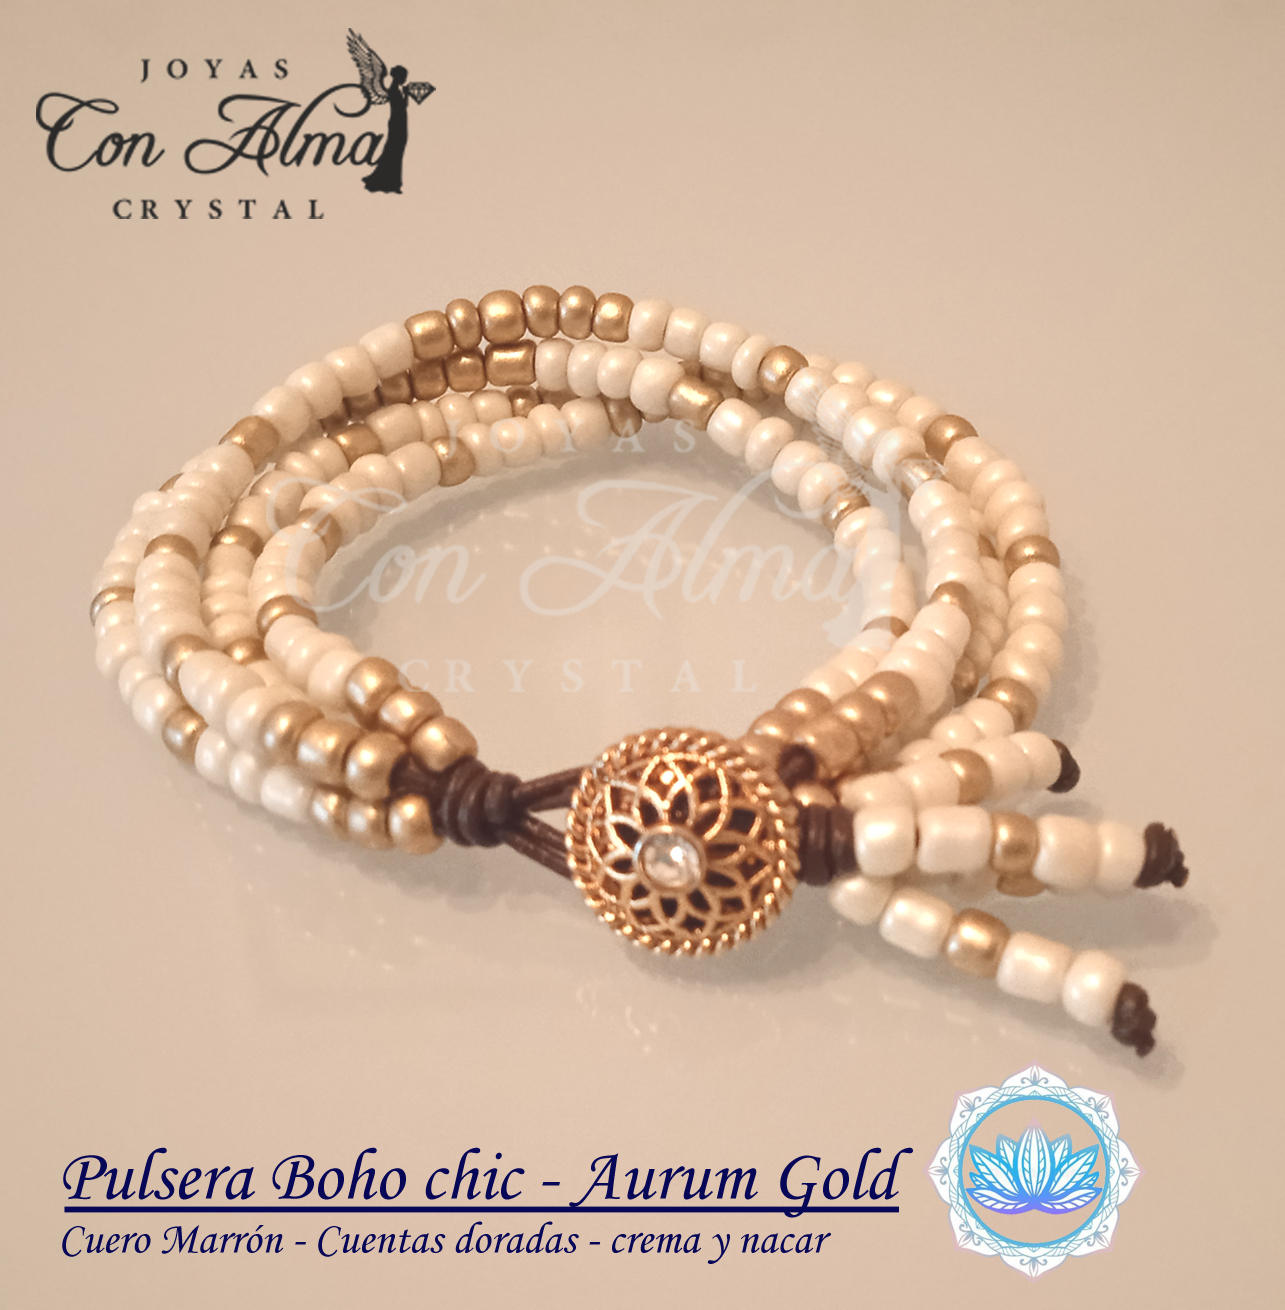 Pulsera Boho chic -Aurum Gold 20 €